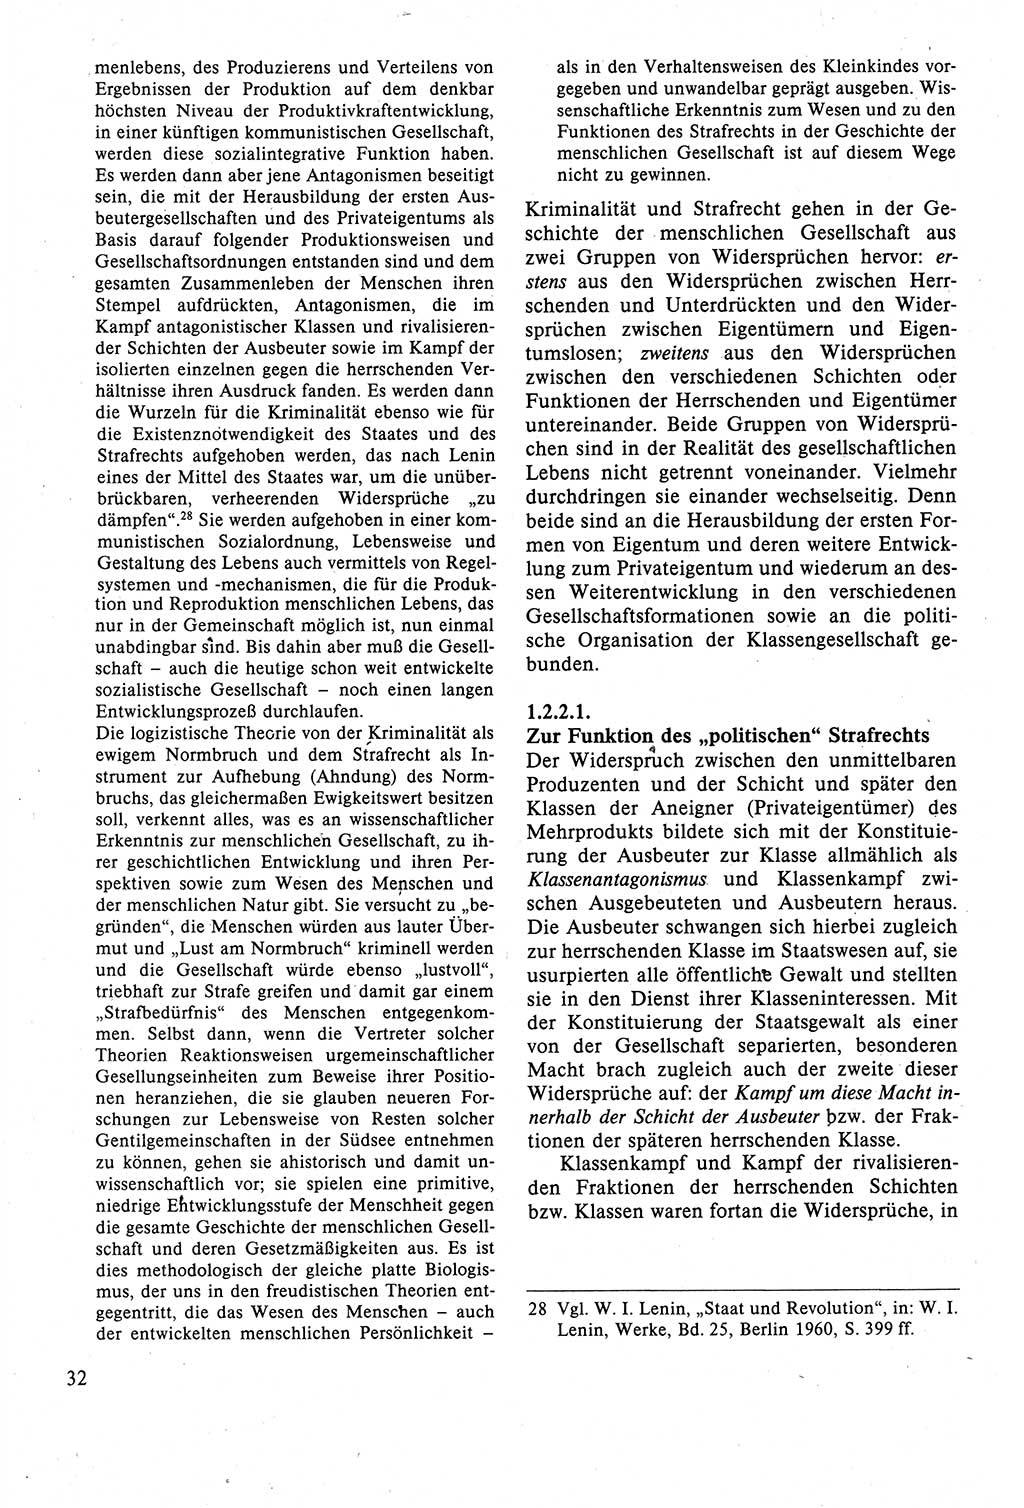 Strafrecht der DDR (Deutsche Demokratische Republik), Lehrbuch 1988, Seite 32 (Strafr. DDR Lb. 1988, S. 32)